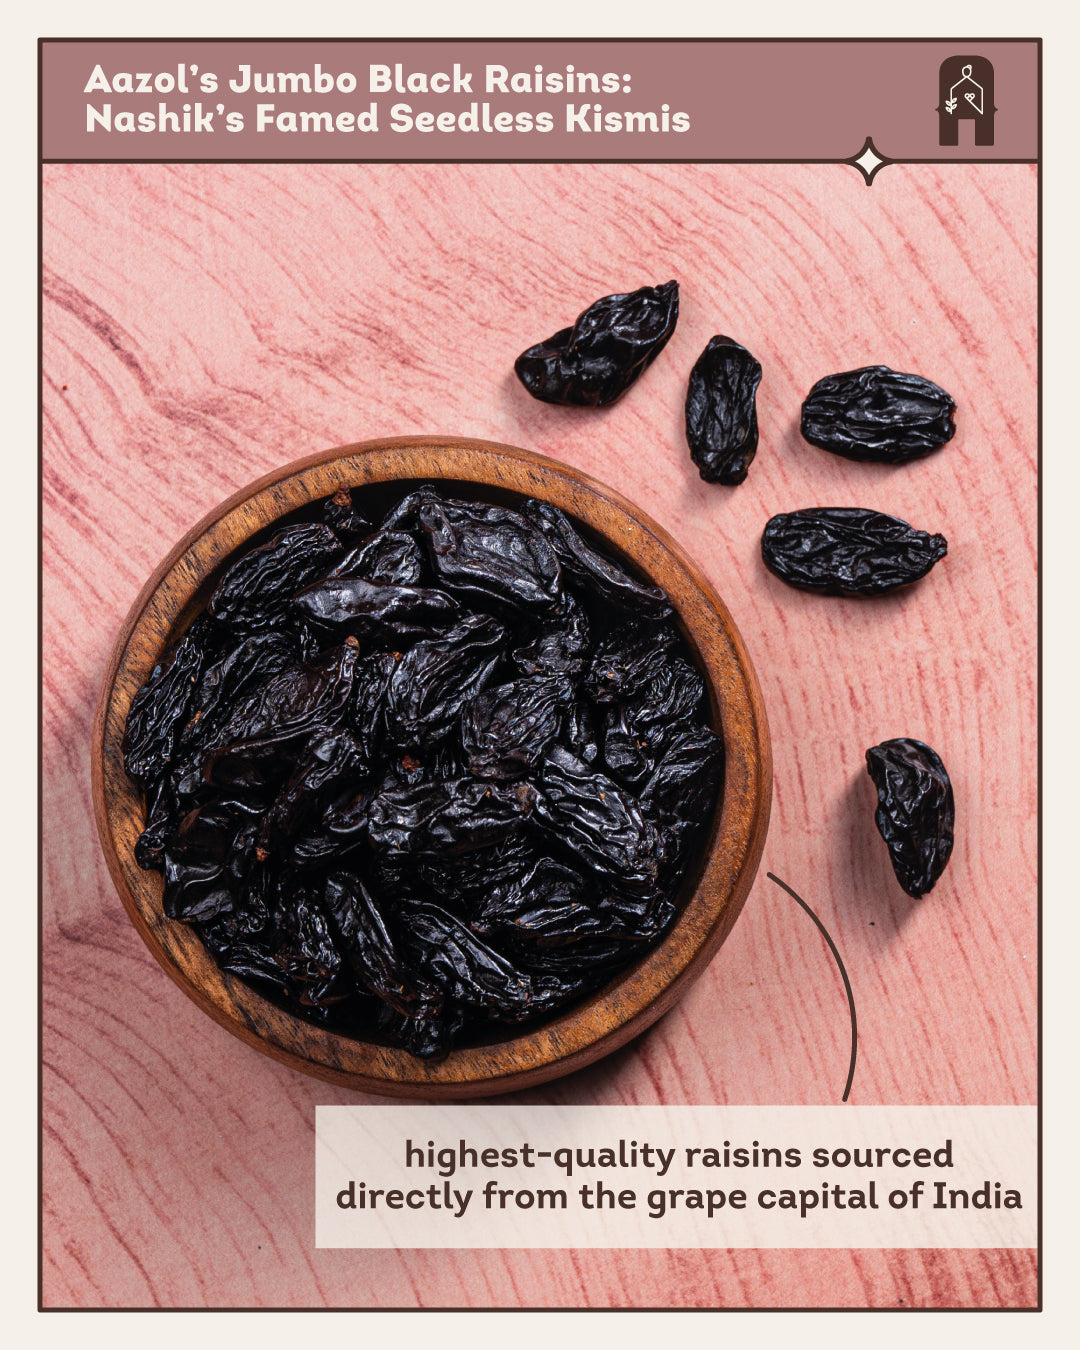 Aazol Jumbo Black Raisins: Nashik's Famed Seedless Kismis - 250gms (Pack of 2) - hfnl!fe